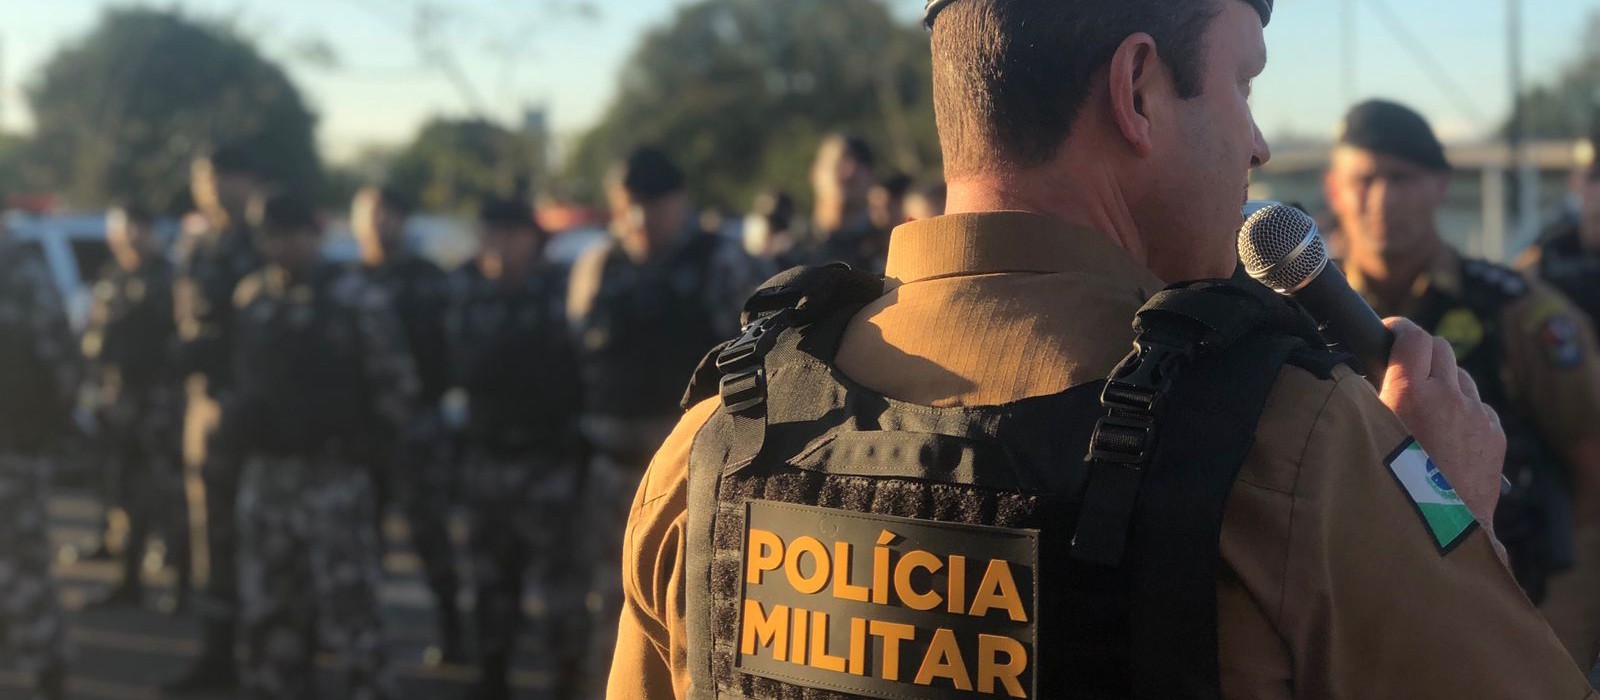 Nova lei vai exigir curso superior para ingresso de novos policiais militares e bombeiros no Paraná